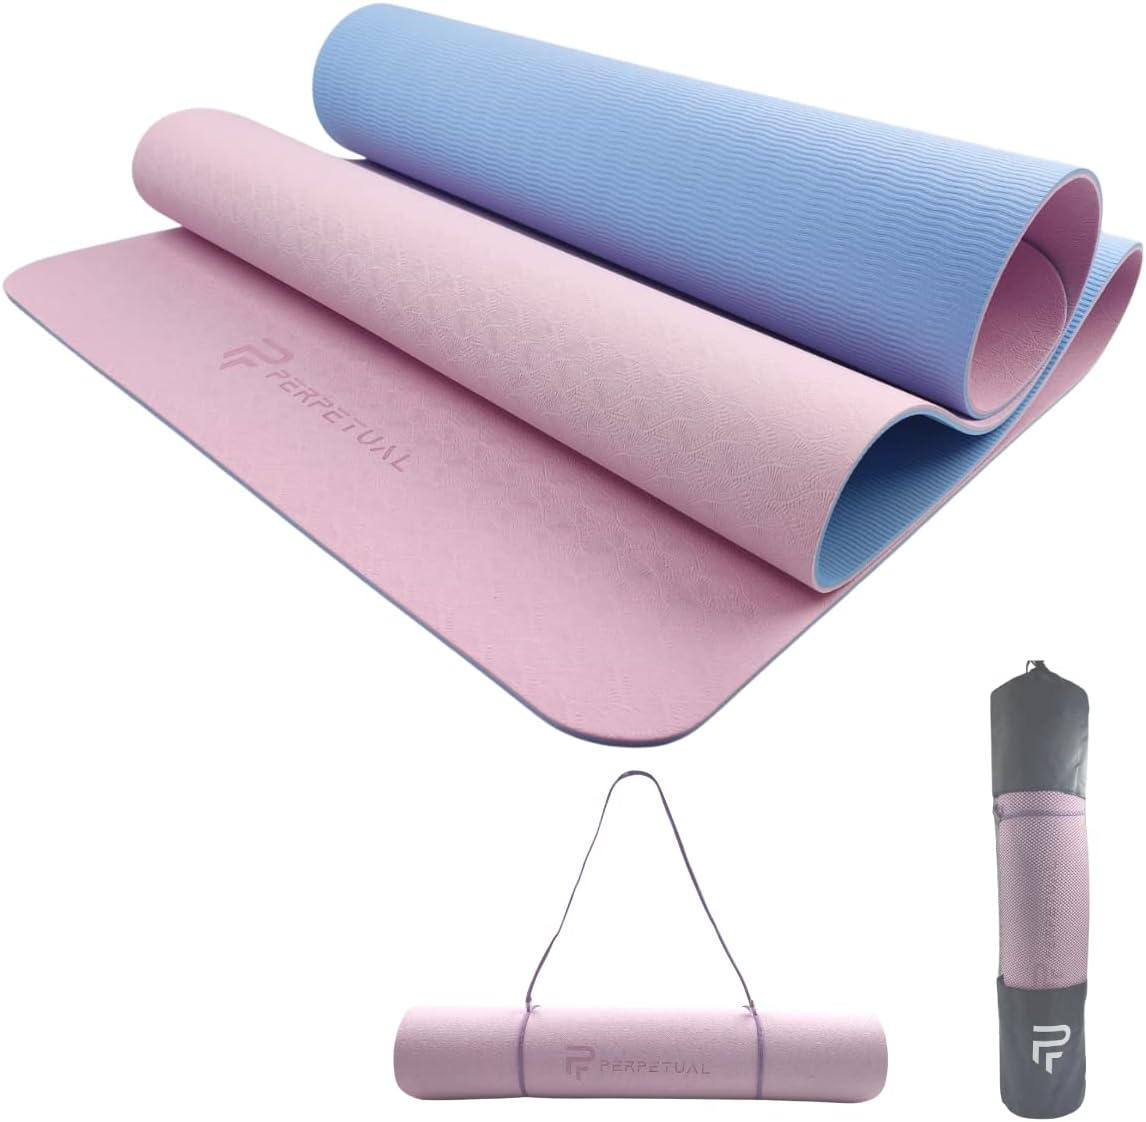 Esterilla Perpetual De Yoga Y Pilates Antideslizante De 6mm Con Correa Y Bolsa De Transporte - azul-rosa-claro - 